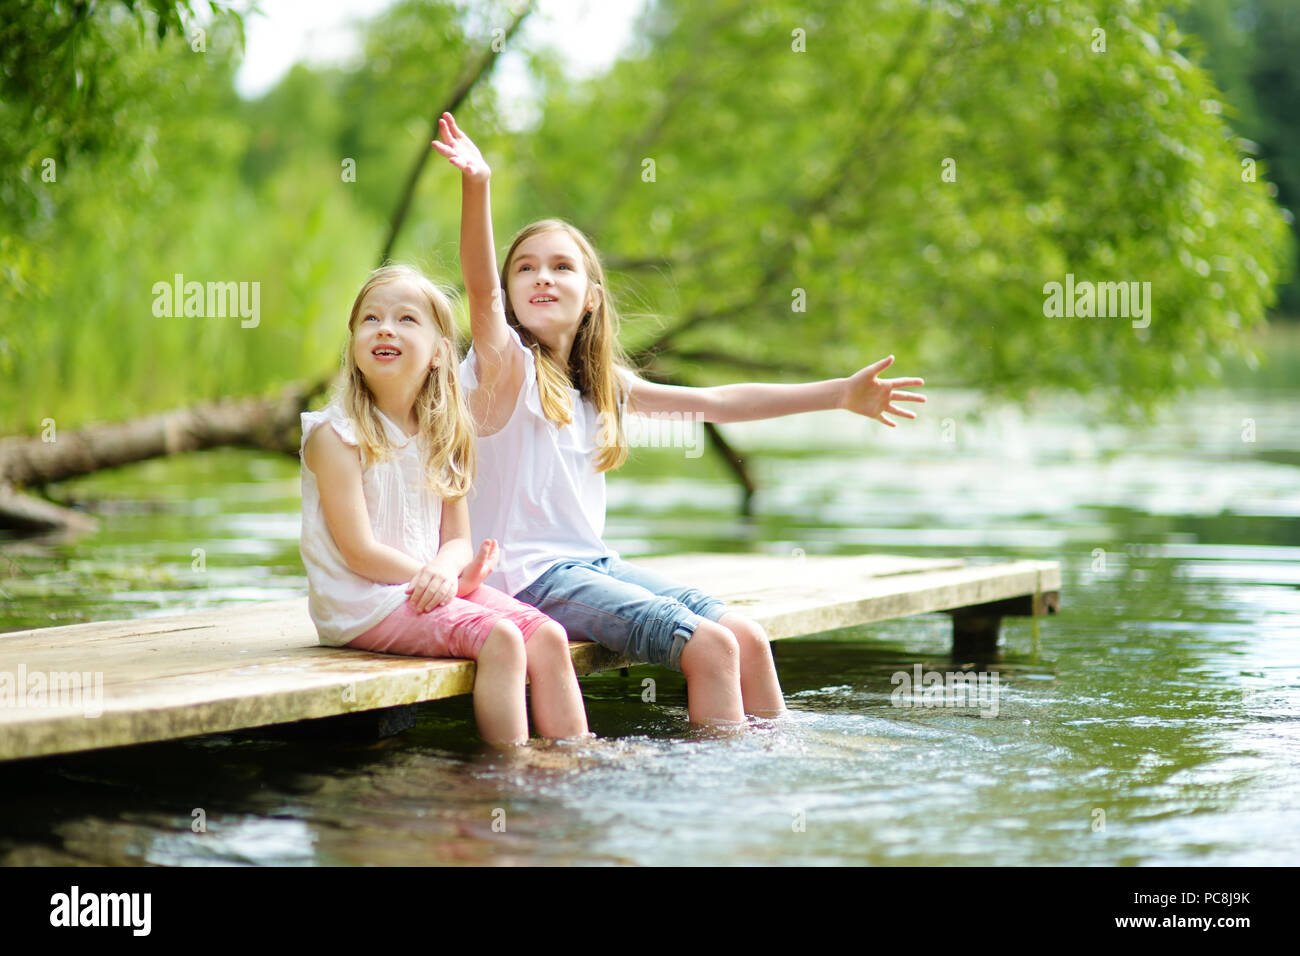 Zwei süße kleine Mädchen sitzen auf einer hölzernen Plattform durch den Fluss oder See Ihre Füße eintauchen in das Wasser an warmen Sommertagen. Aktivitäten für die ganze Familie in Summe Stockfoto